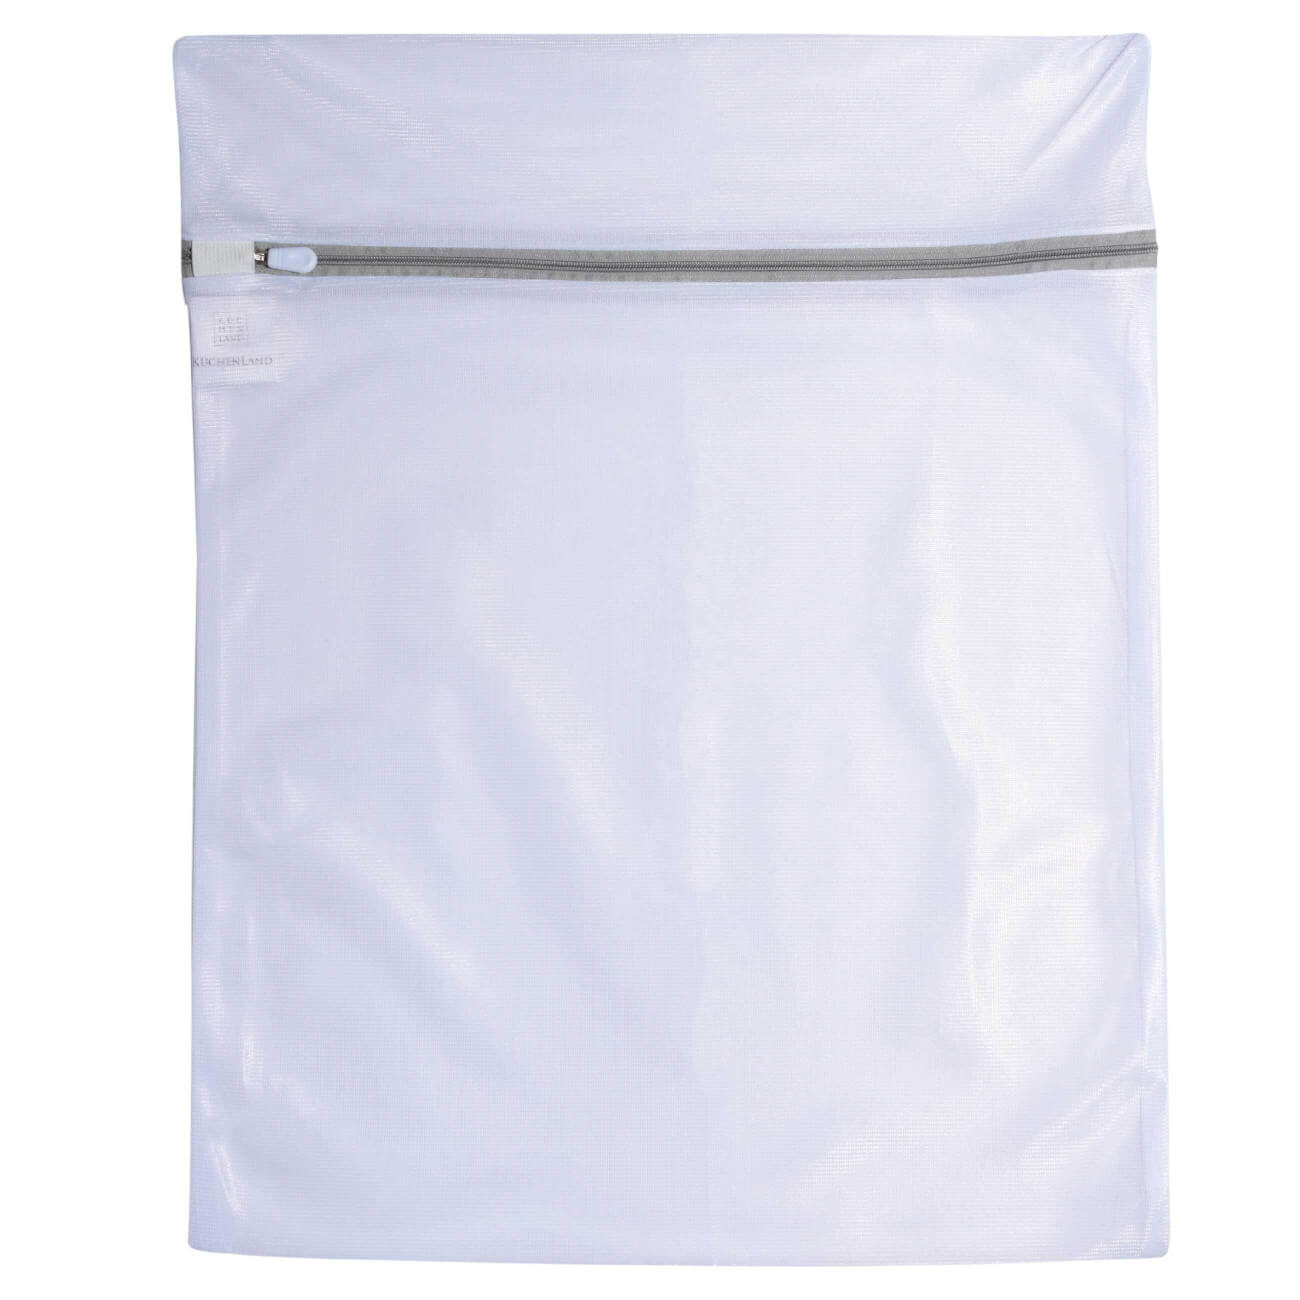 Мешок для стирки одежды, 40х50 см, полиэстер, бело-серый, Safety plus мешок для стирки нижнего белья 25х30 см полиэстер бело серый safety